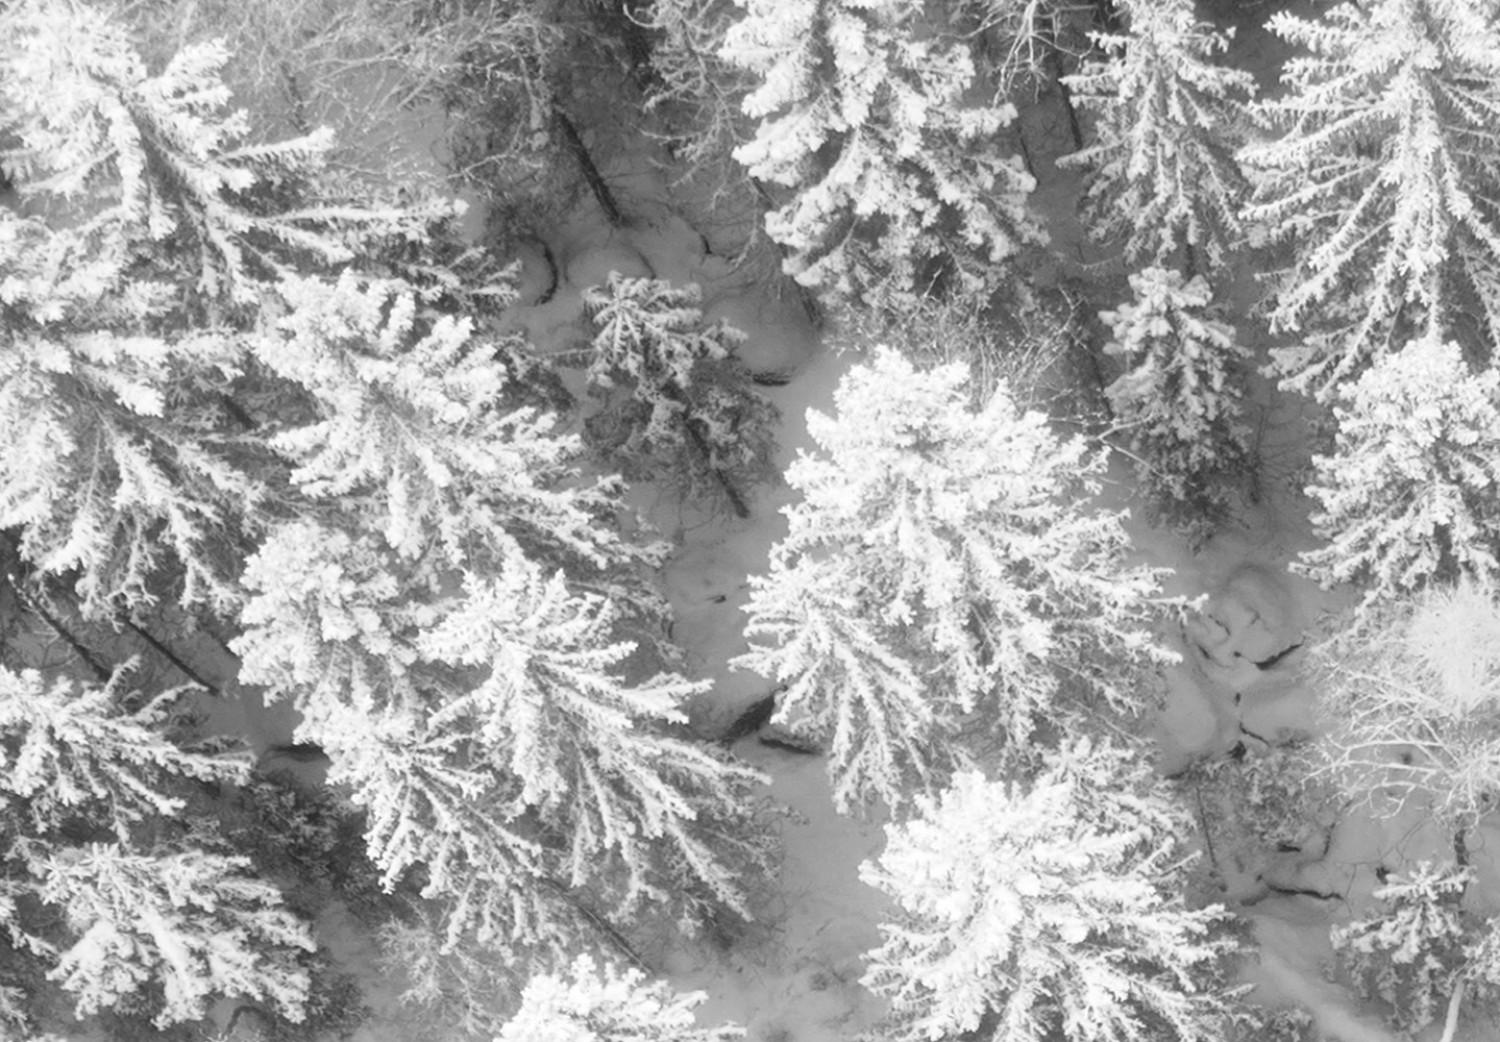 Cartel Arroyo frío - paisaje invernal en blanco y negro de un bosque nevado